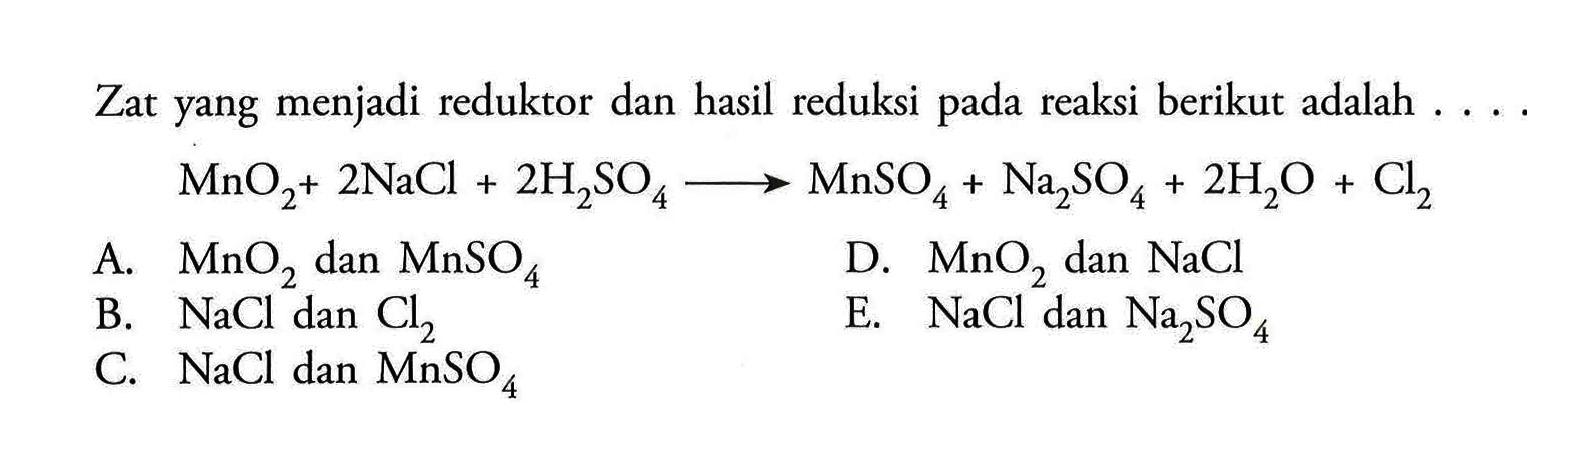 Zat yang menjadi reduktor dan hasil reduksi pada reaksi berikut adalah ....MnO2+2NaCl+2H2SO4->MnSO4+Na2SO4+2H2O+Cl2 A. MnO2 dan MnSO4 B. NaCl dan Cl2 C. NaCl dan MnSO4 D. MnO2 dan NaCl E. NaCl dan Na2 SO4